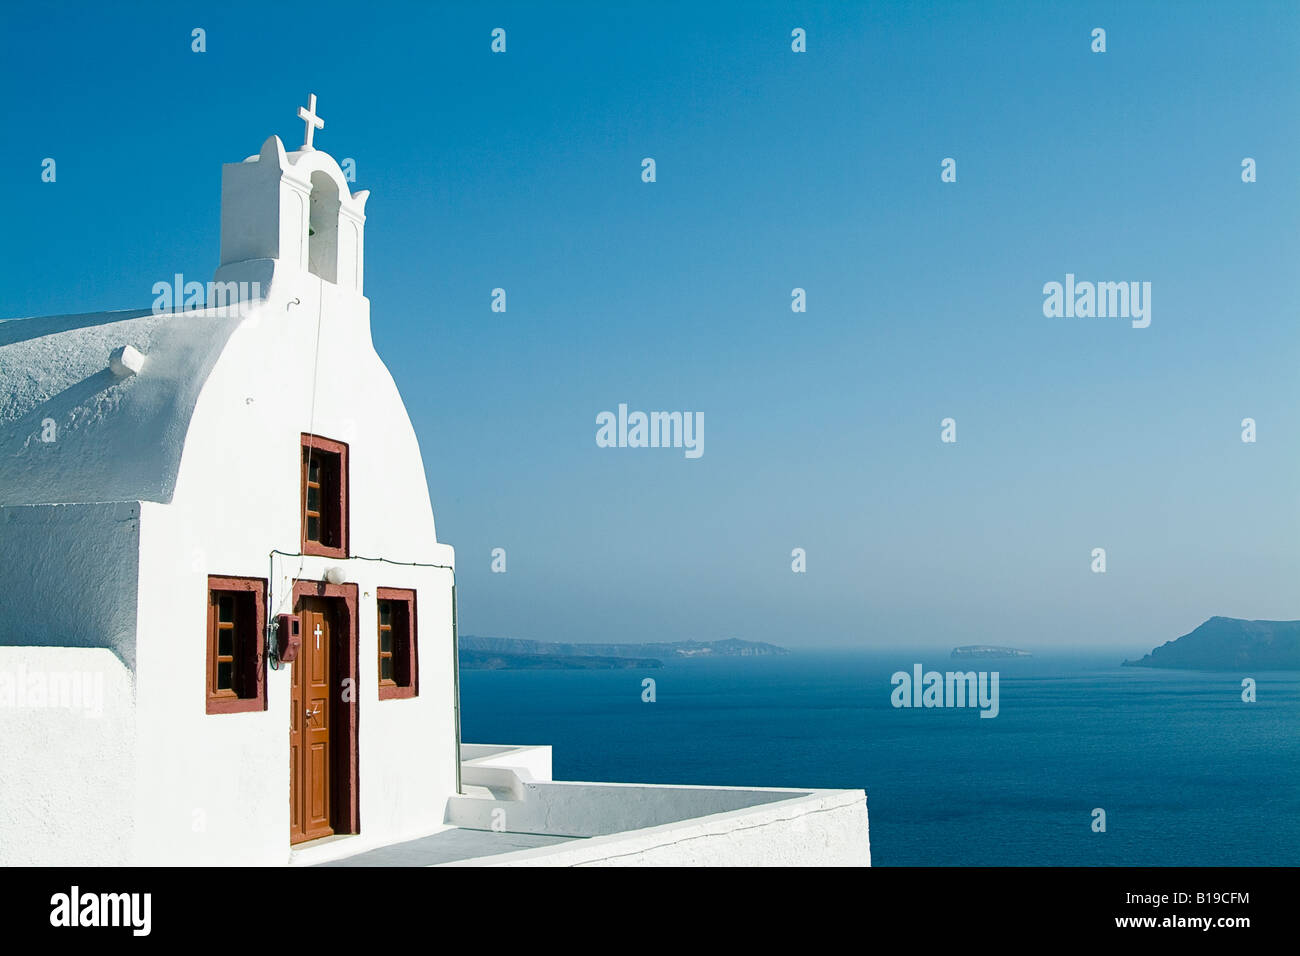 Église donnant sur la mer Égée, Oia, Santorini, Cyclades, Grèce. Banque D'Images